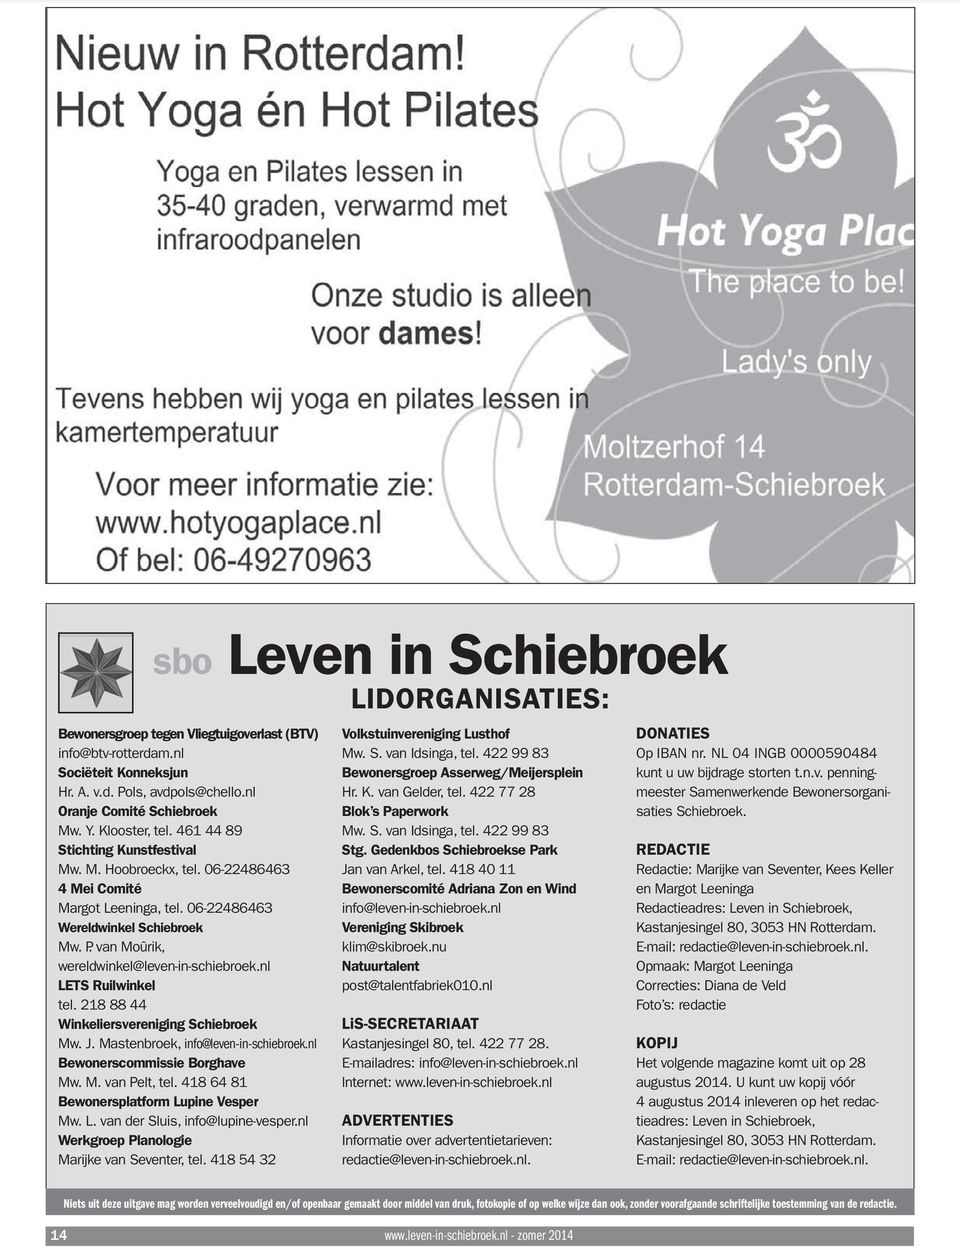 nl LETS Ruilwinkel tel. 218 88 44 Winkeliersvereniging Schiebroek Mw. J. Mastenbroek, info@leven-in-schiebroek.nl Bewonerscommissie Borghave Mw. M. van Pelt, tel.